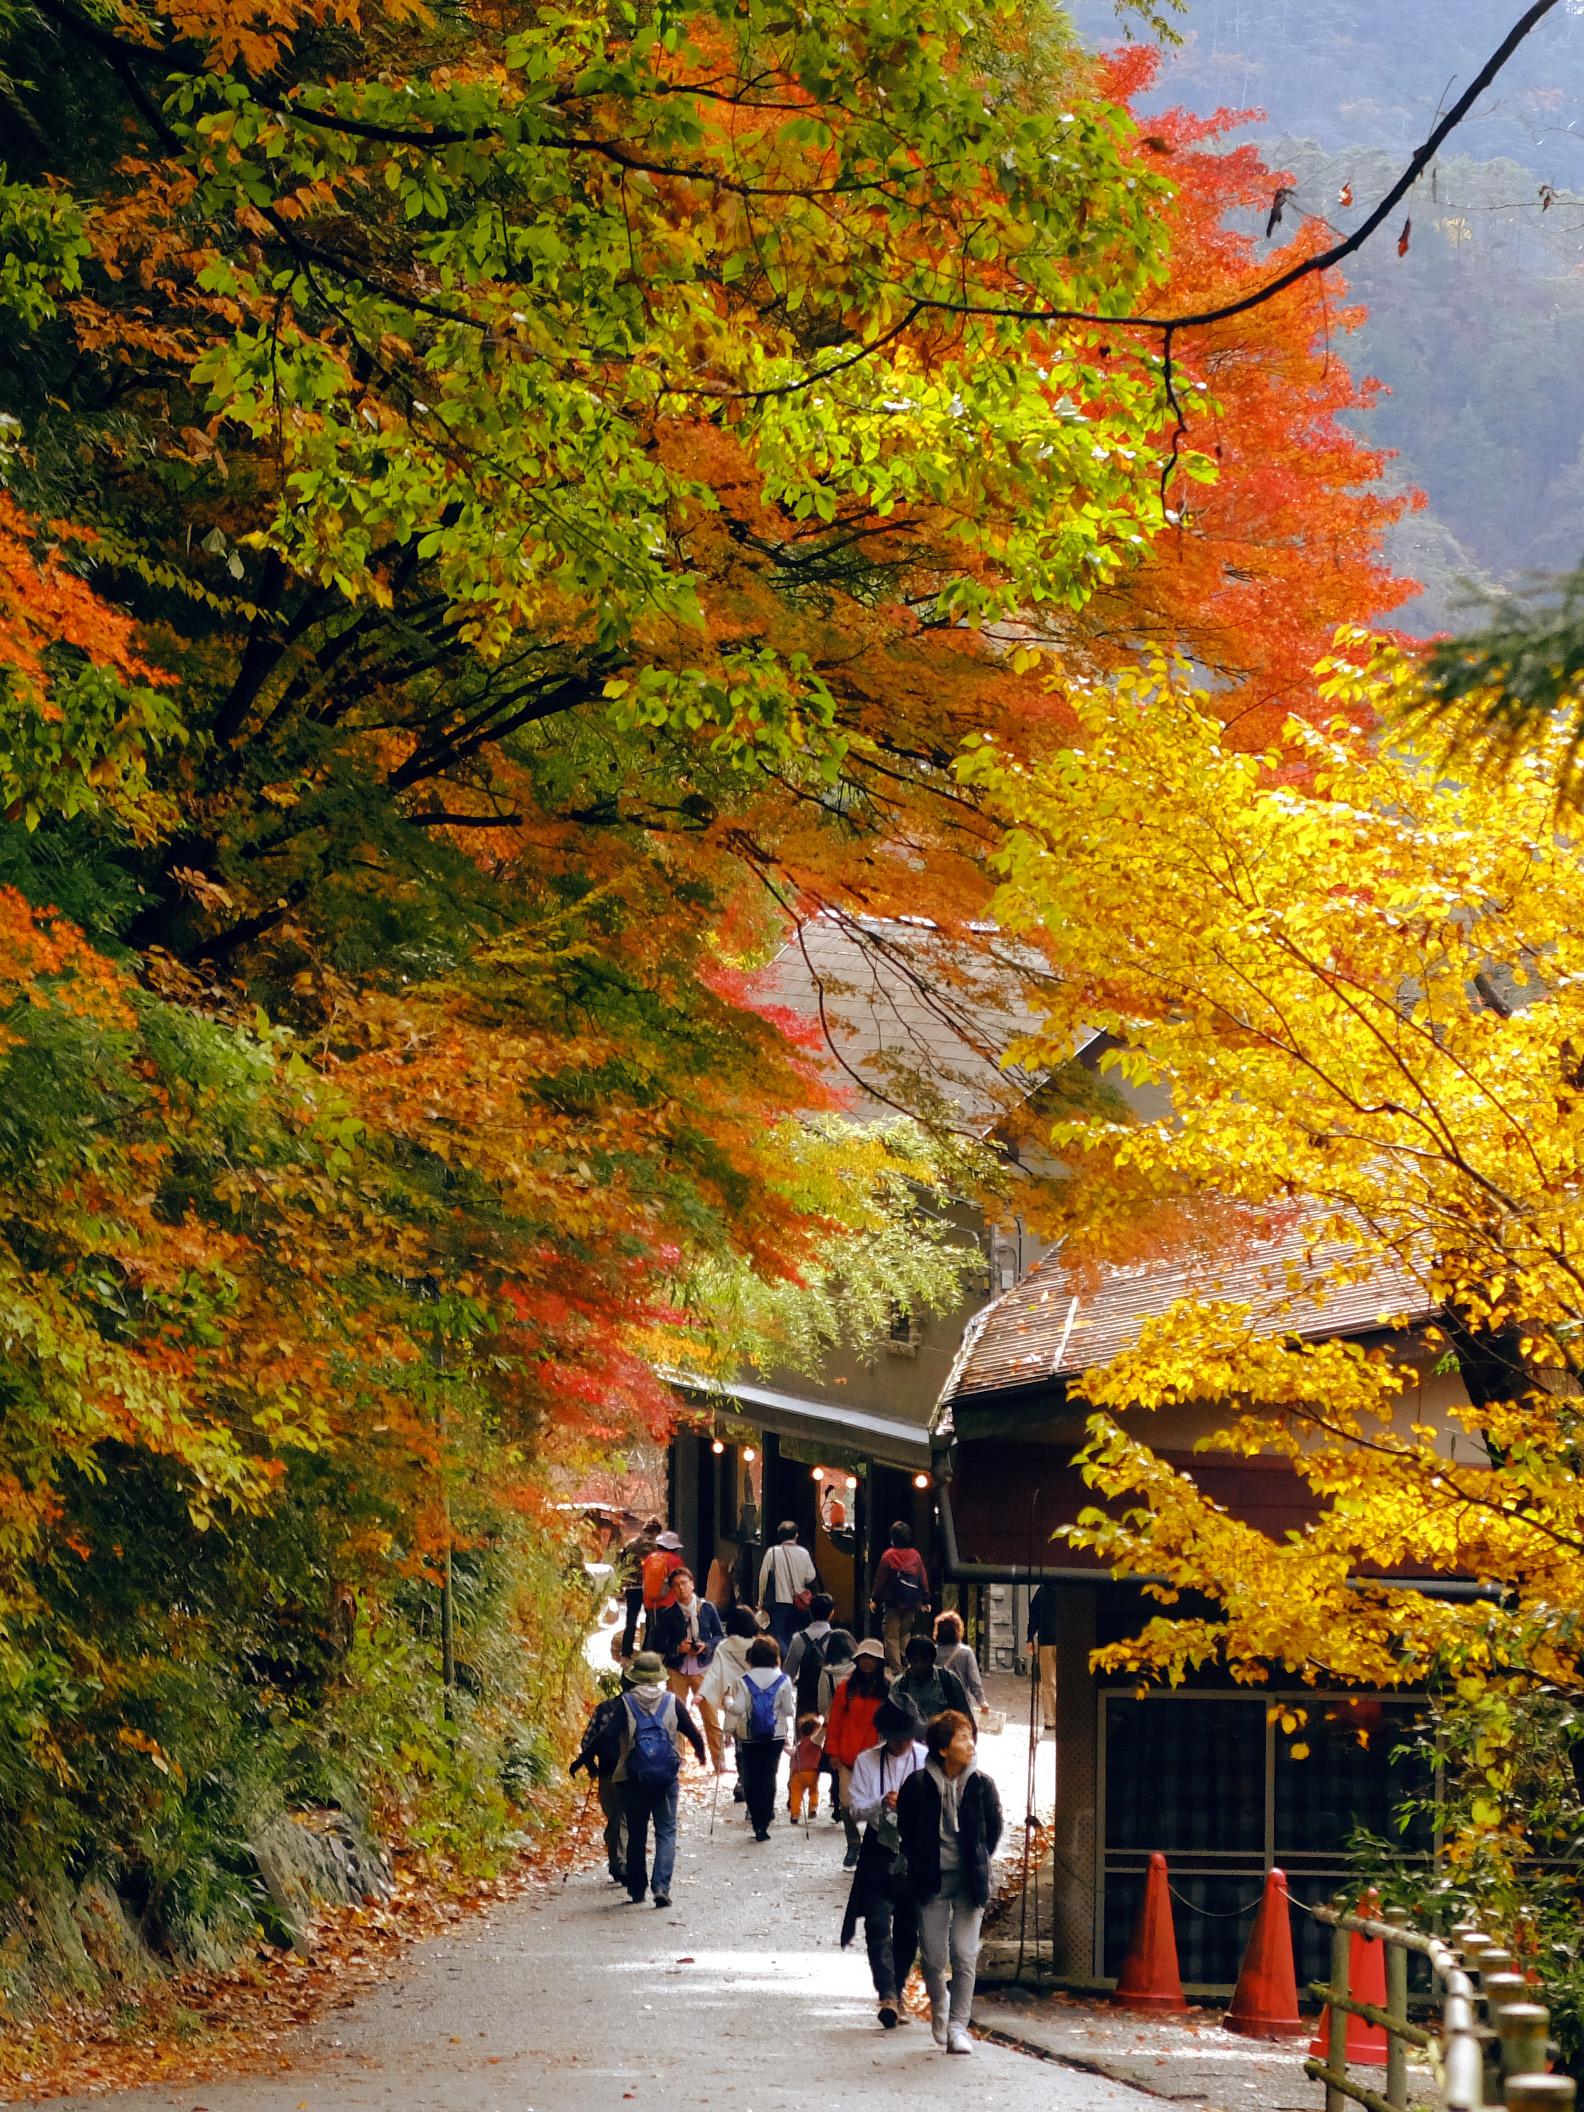 桌布 日本京都醍醐秋景 1920x1080 全高清 高清桌布, 圖片, 照片